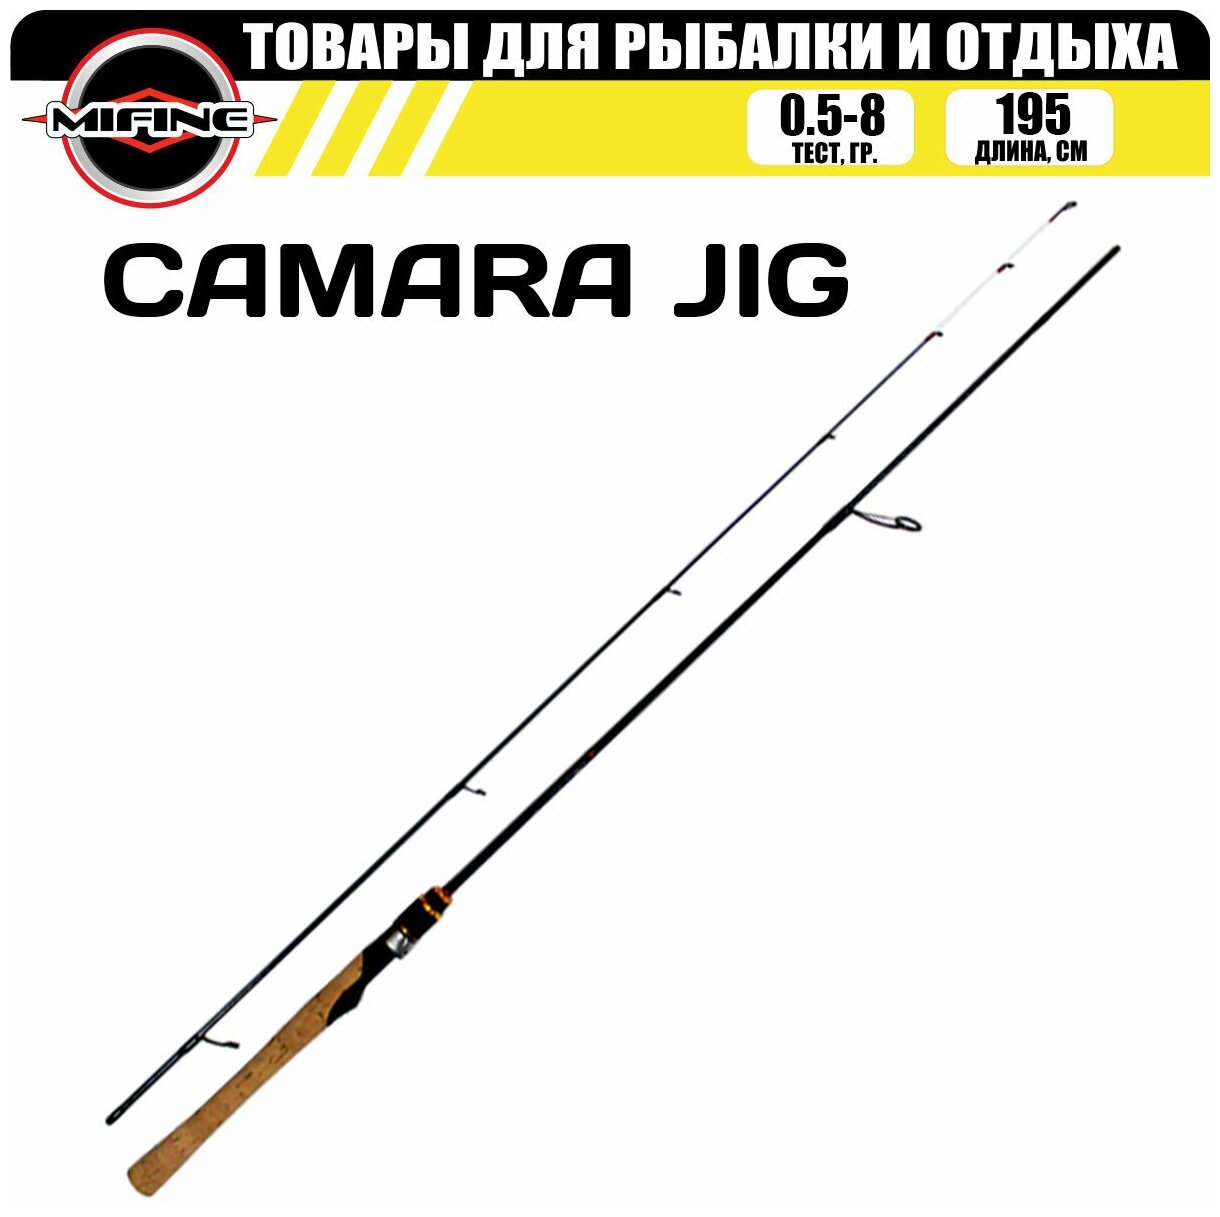 Спиннинг штекерный с быстрым строем MIFINE CAMARA JIG SPIN 1.95м (0.5-8гр), для рыбалки, рыболовный